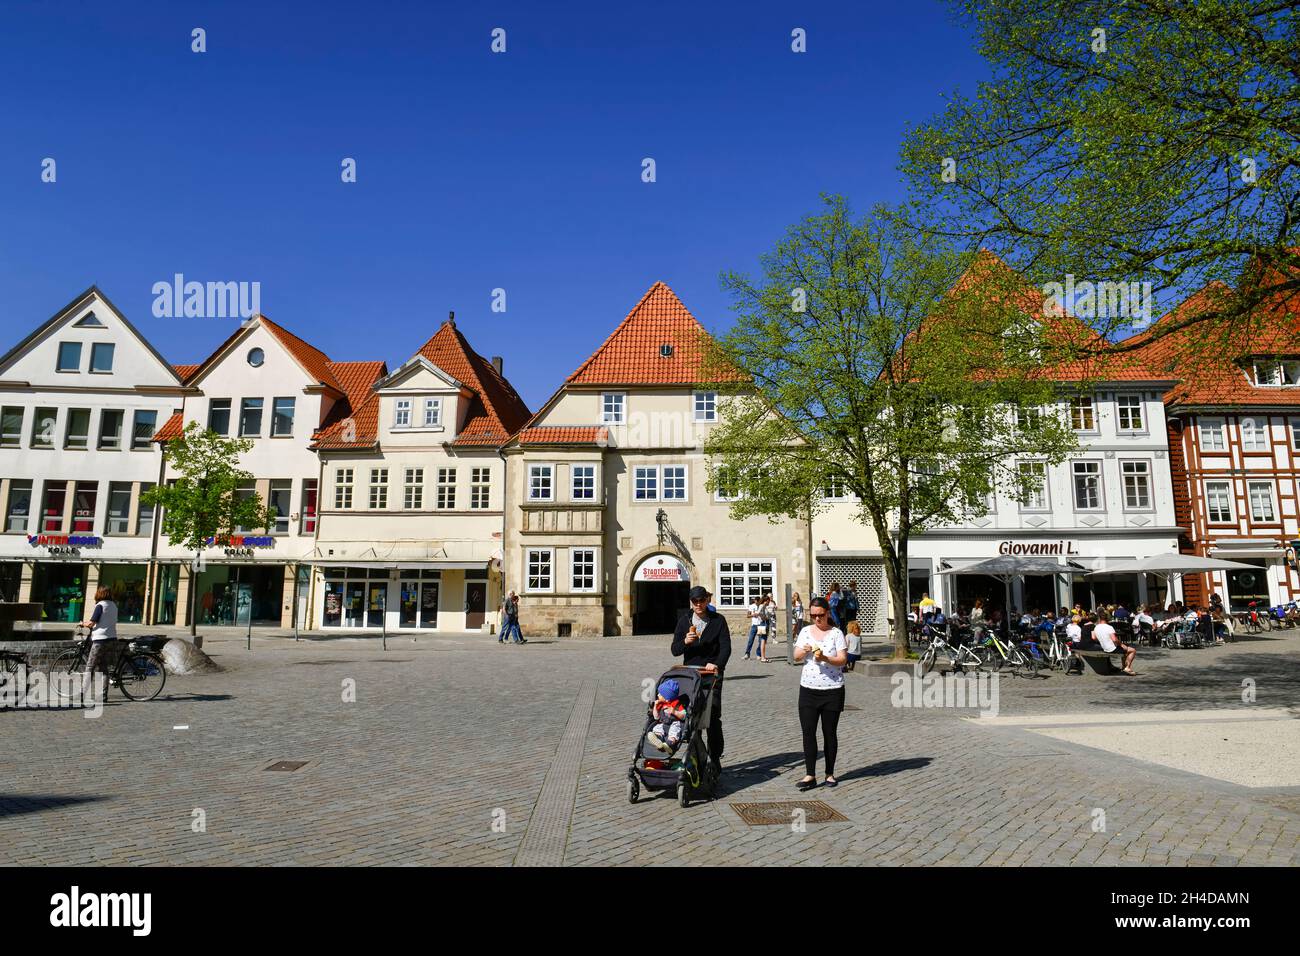 Altbauten, Das Stadtidyll, Altstadt, Hameln, Niedersachsen, Deutschland Banque D'Images